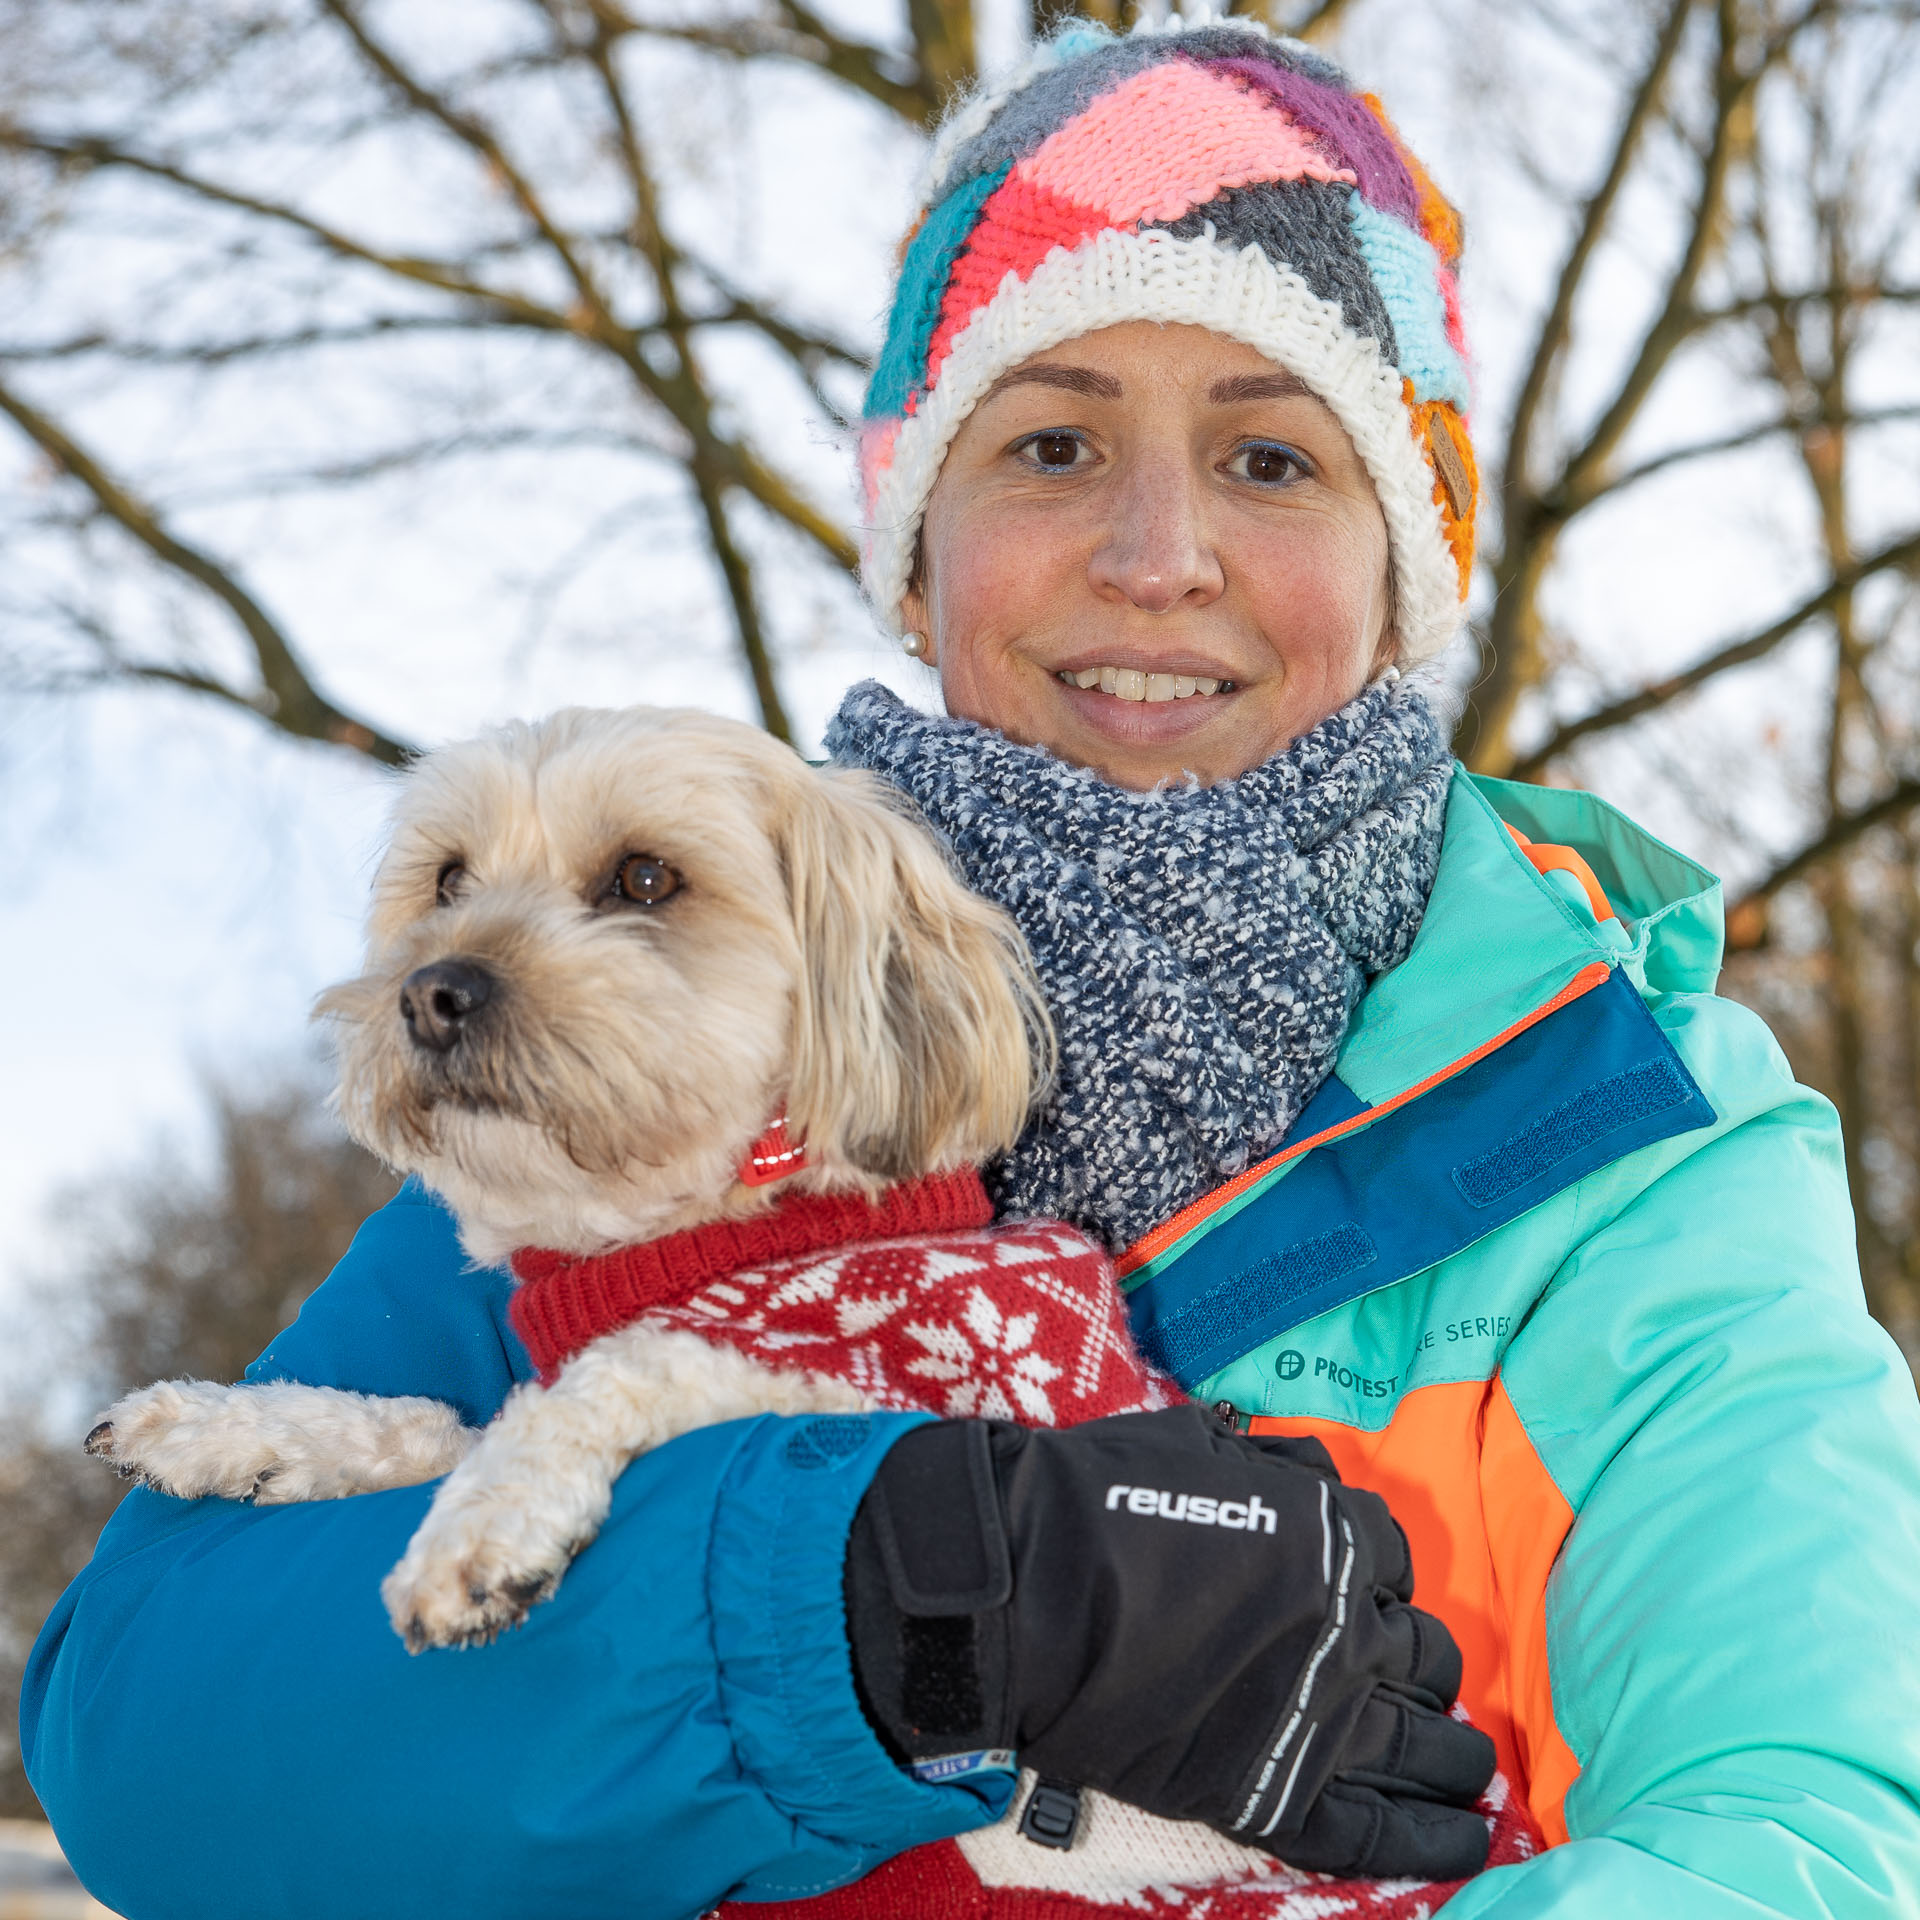 straatfotografie Houten, ontmoeting tijdens Corona-wandeling, vrouw met hondje in de winter